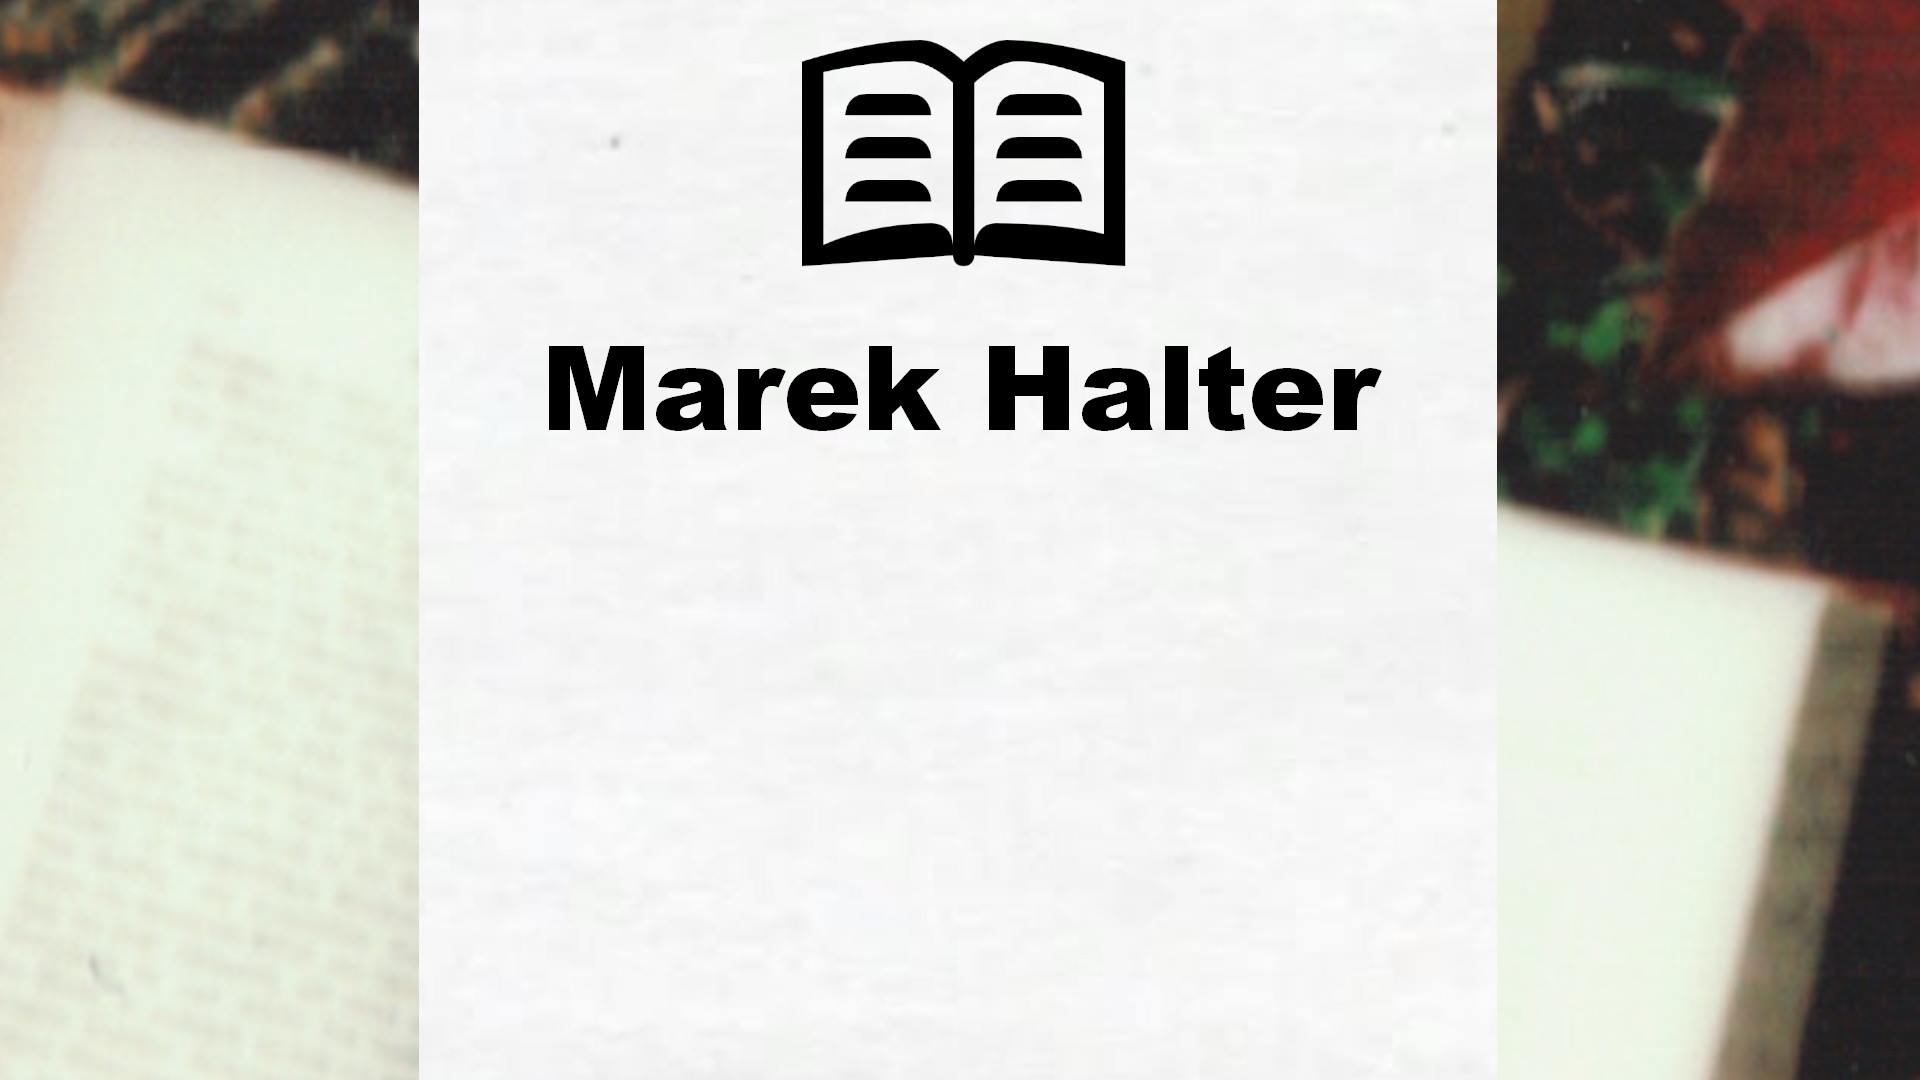 Livres de Marek Halter